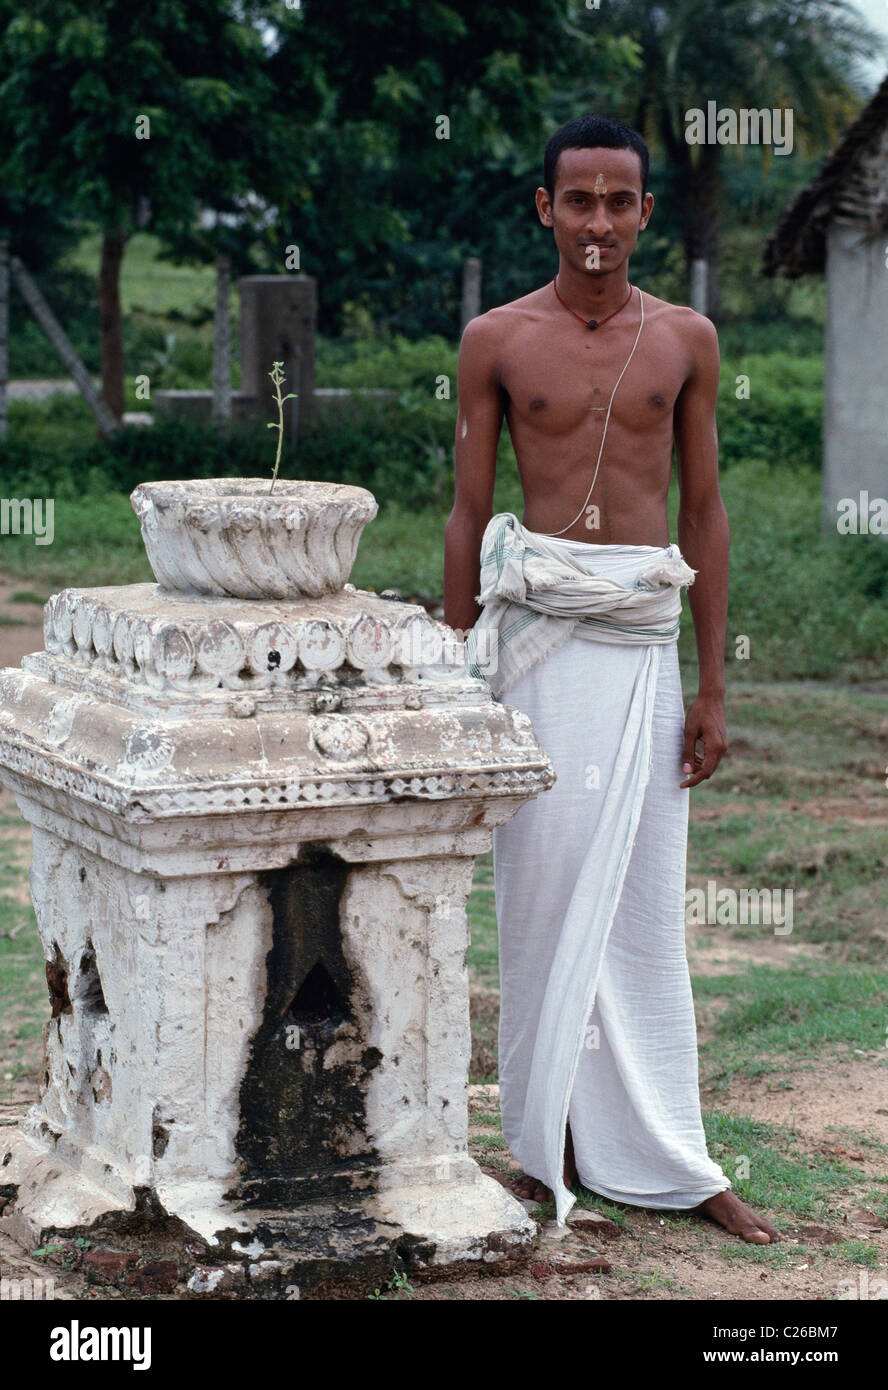 Den Brahmane oberen Kaste Thread tragen, steht ein Junge in seiner Hindu religiösen Schule lernen die Veden oder Heiligen hinduistischen Schriften. Stockfoto